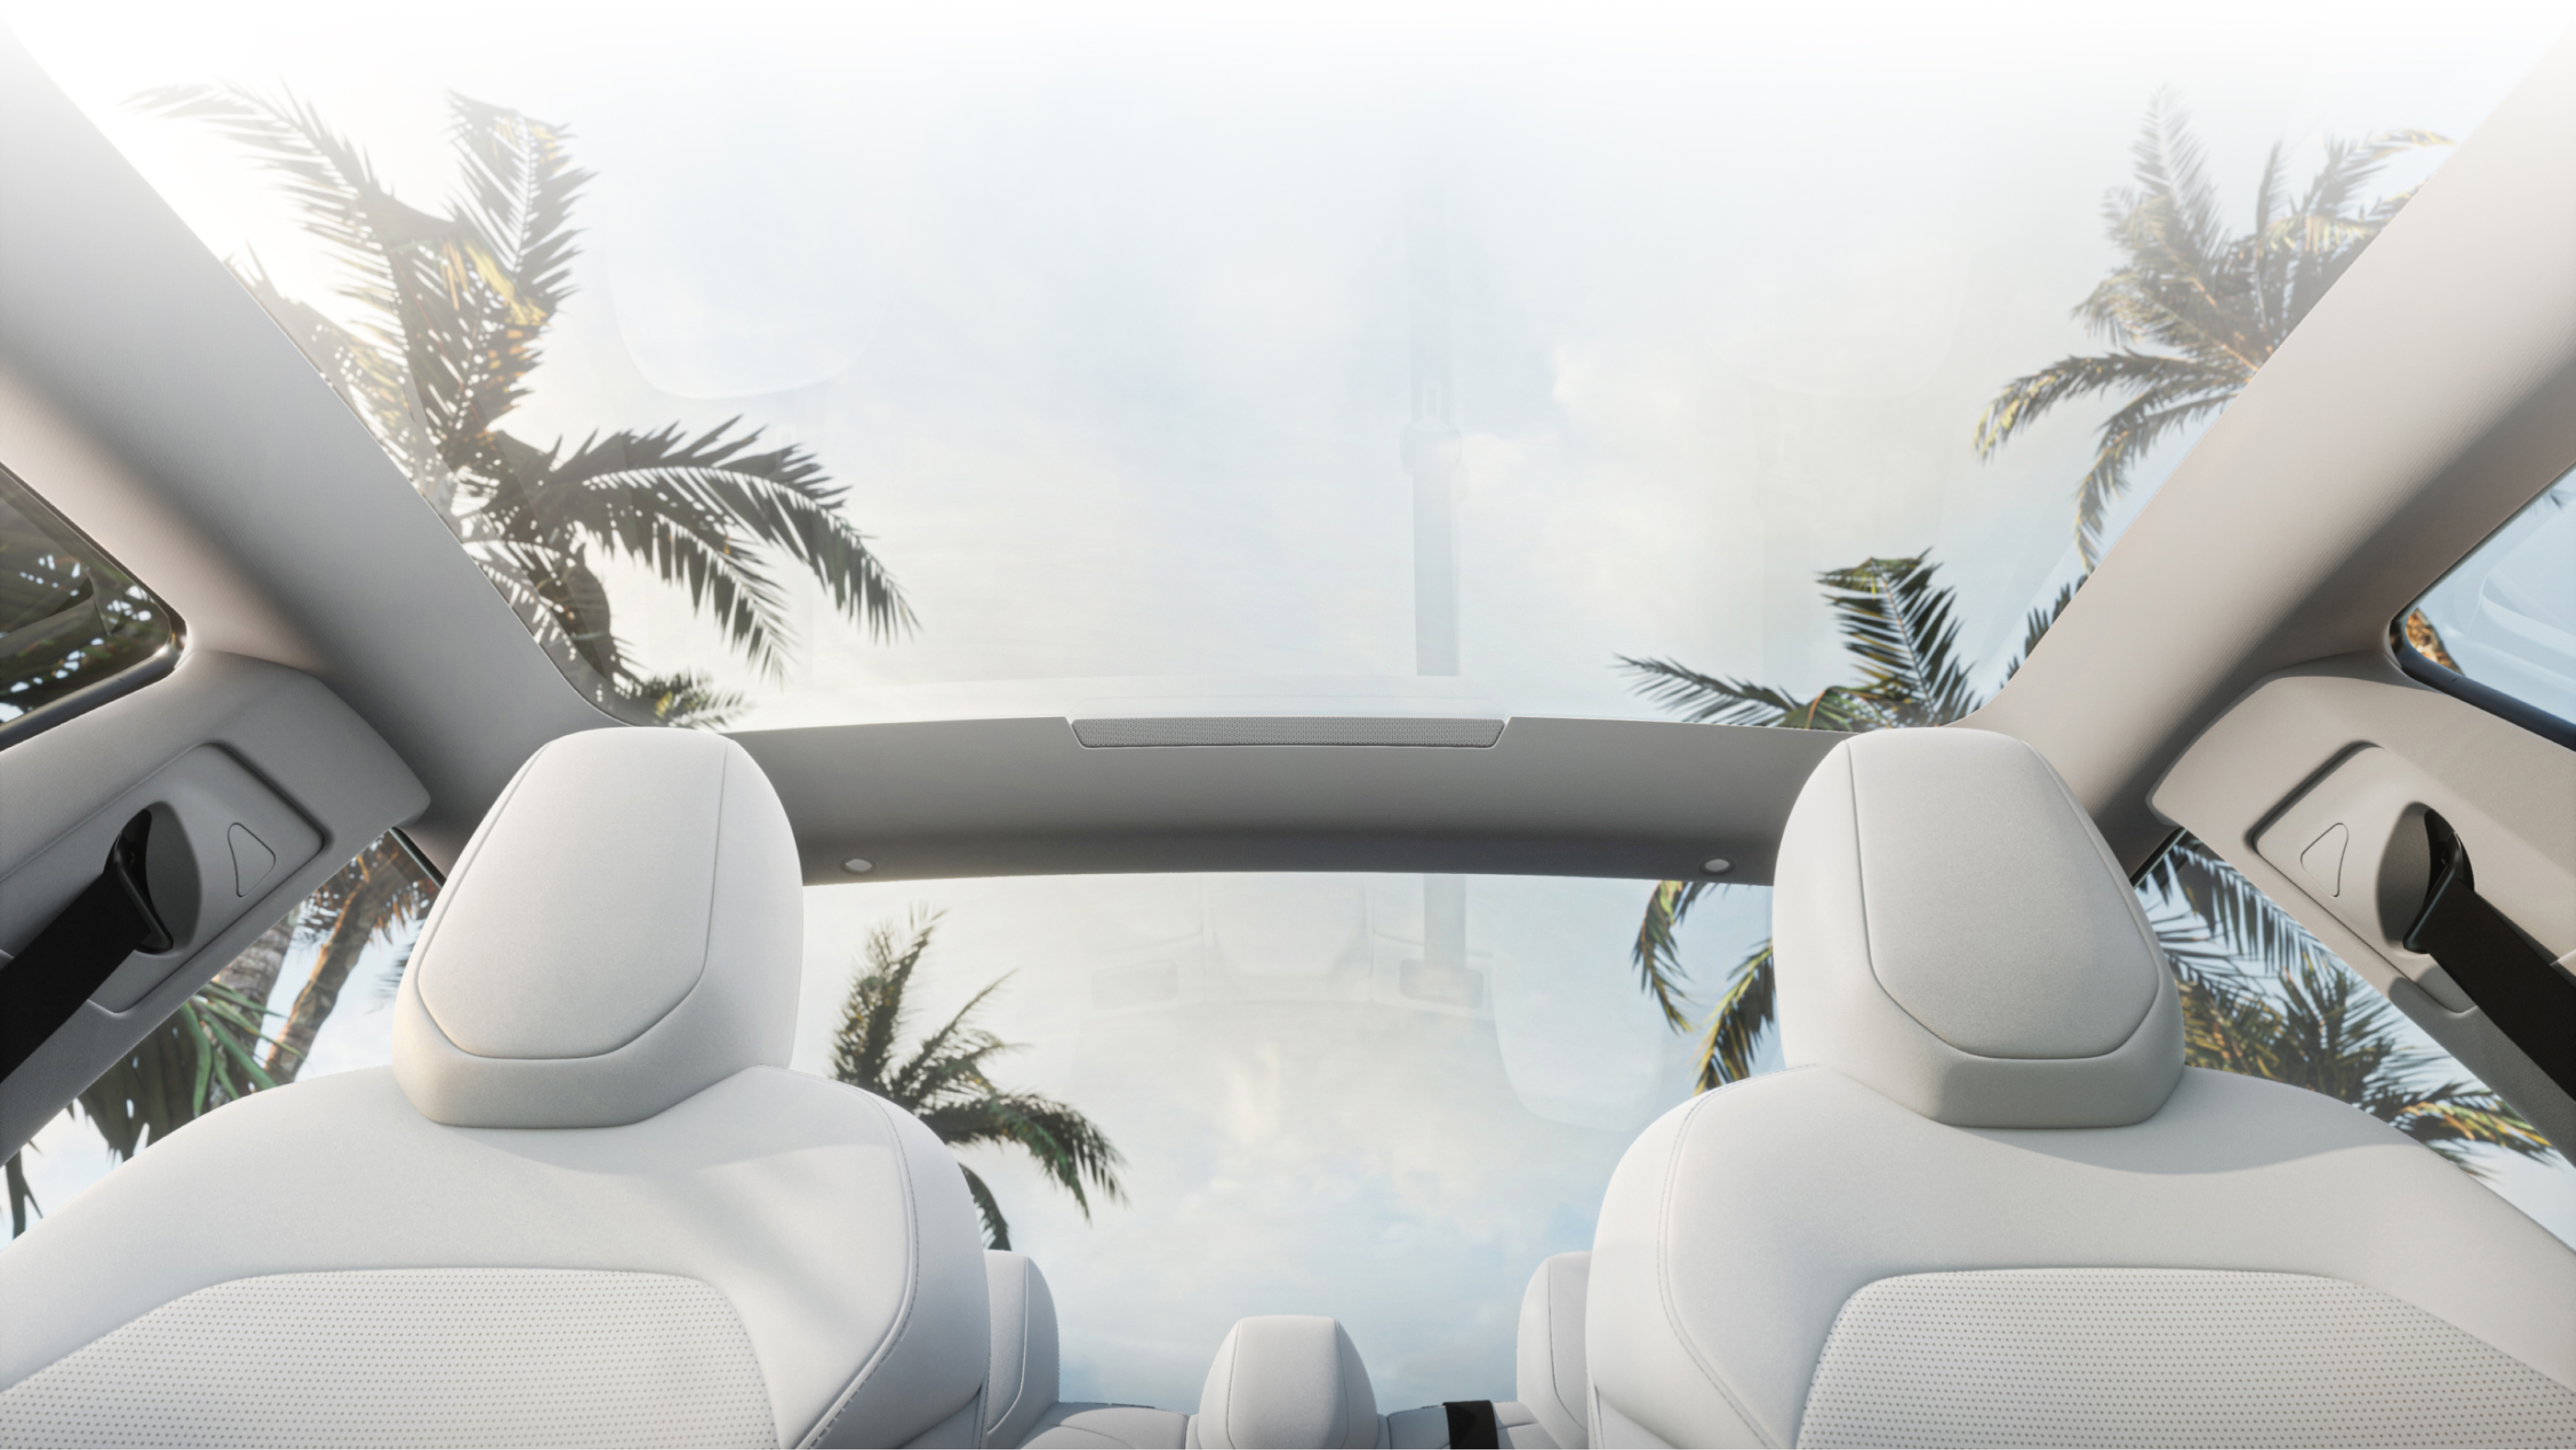 Vue en contre-plongée présentant les sièges avant blancs et le toit en verre par lequel nous voyons des palmiers et un ciel bleu.